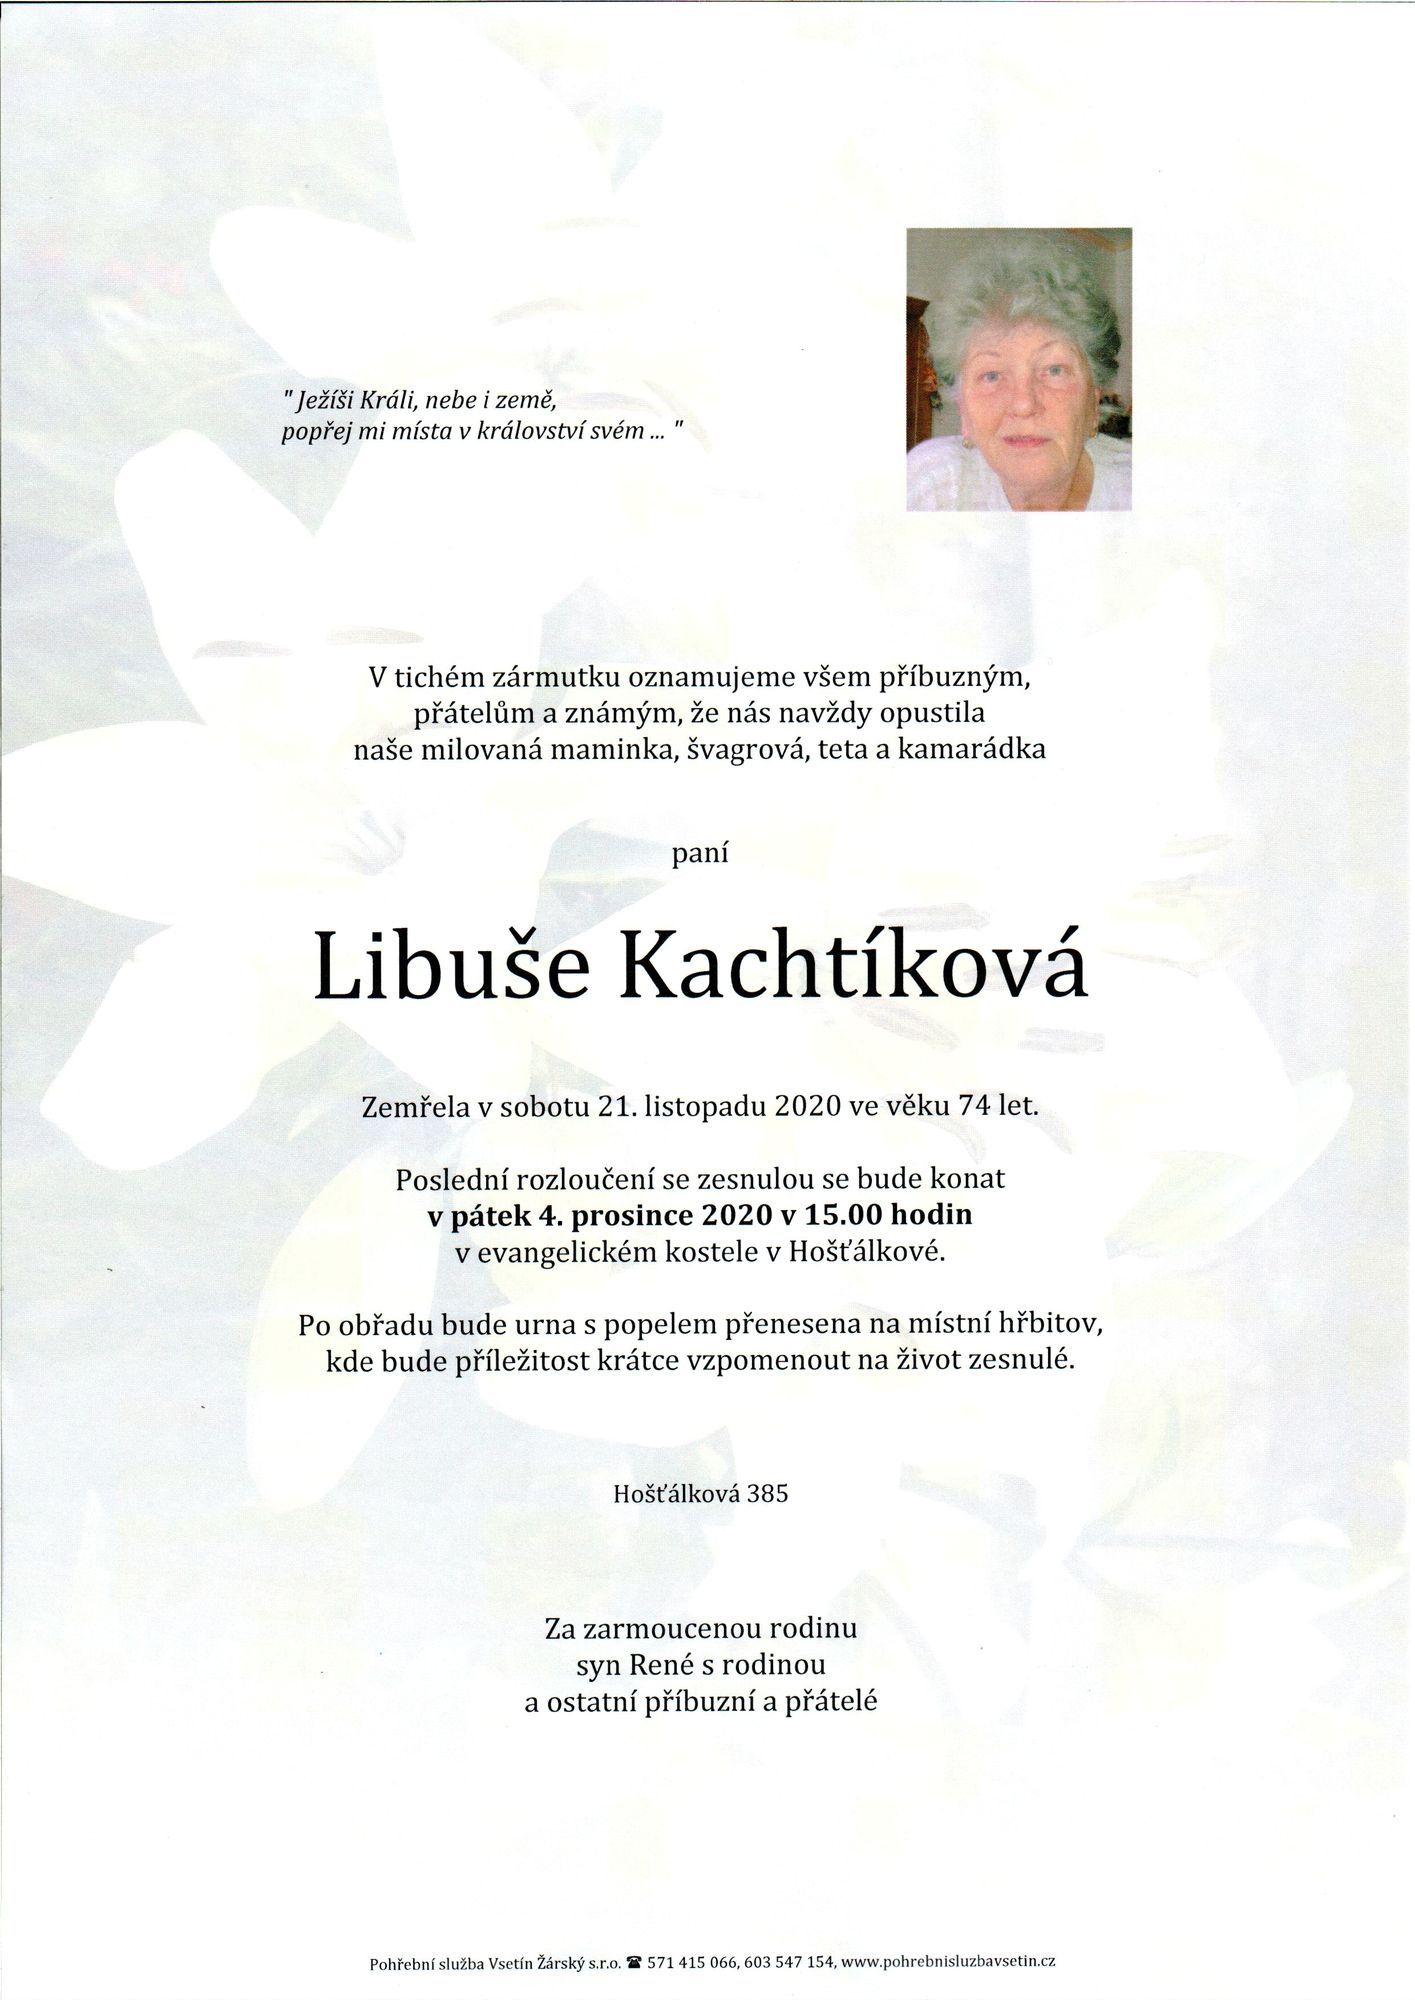 Libuše Kachtíková